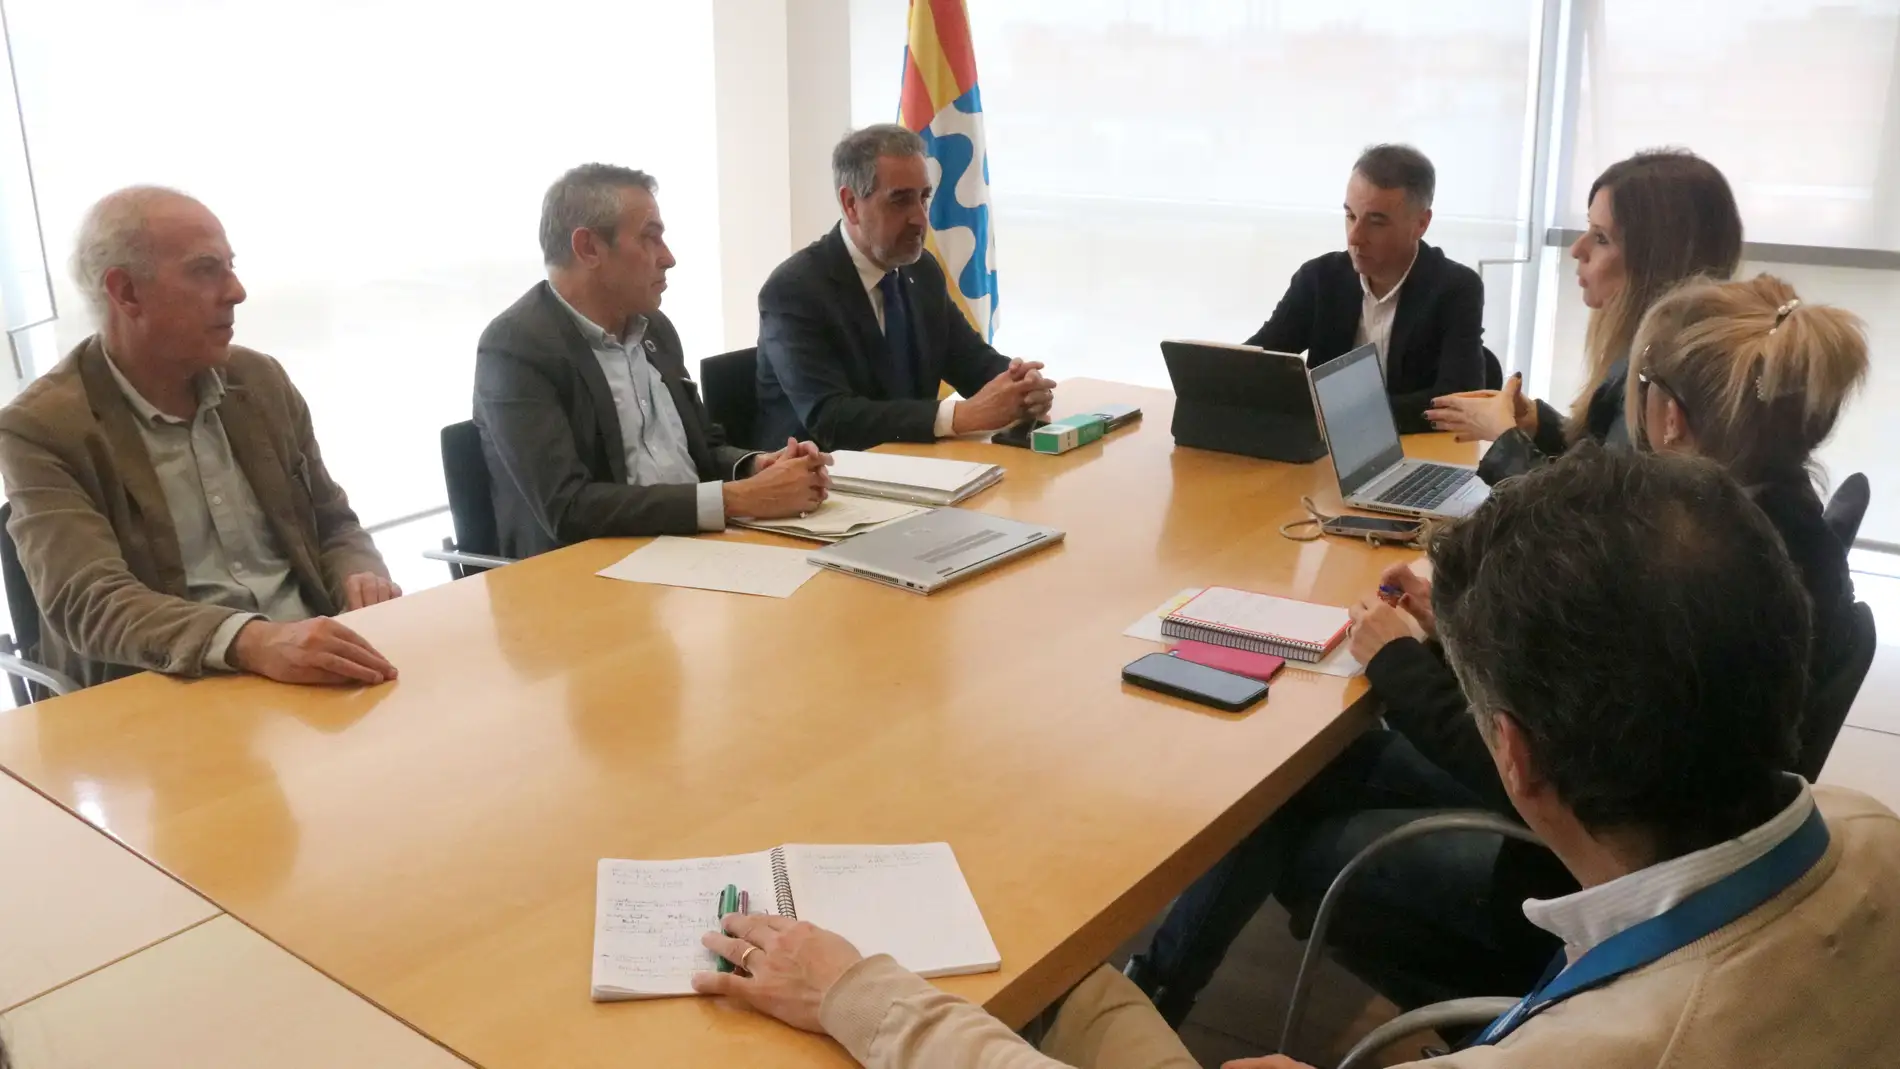 L’Ajuntament de Badalona demana a la Generalitat que inspeccioni els 440 pisos que es troben en la mateixa illa de cases que l’esfondrat fa una setmana